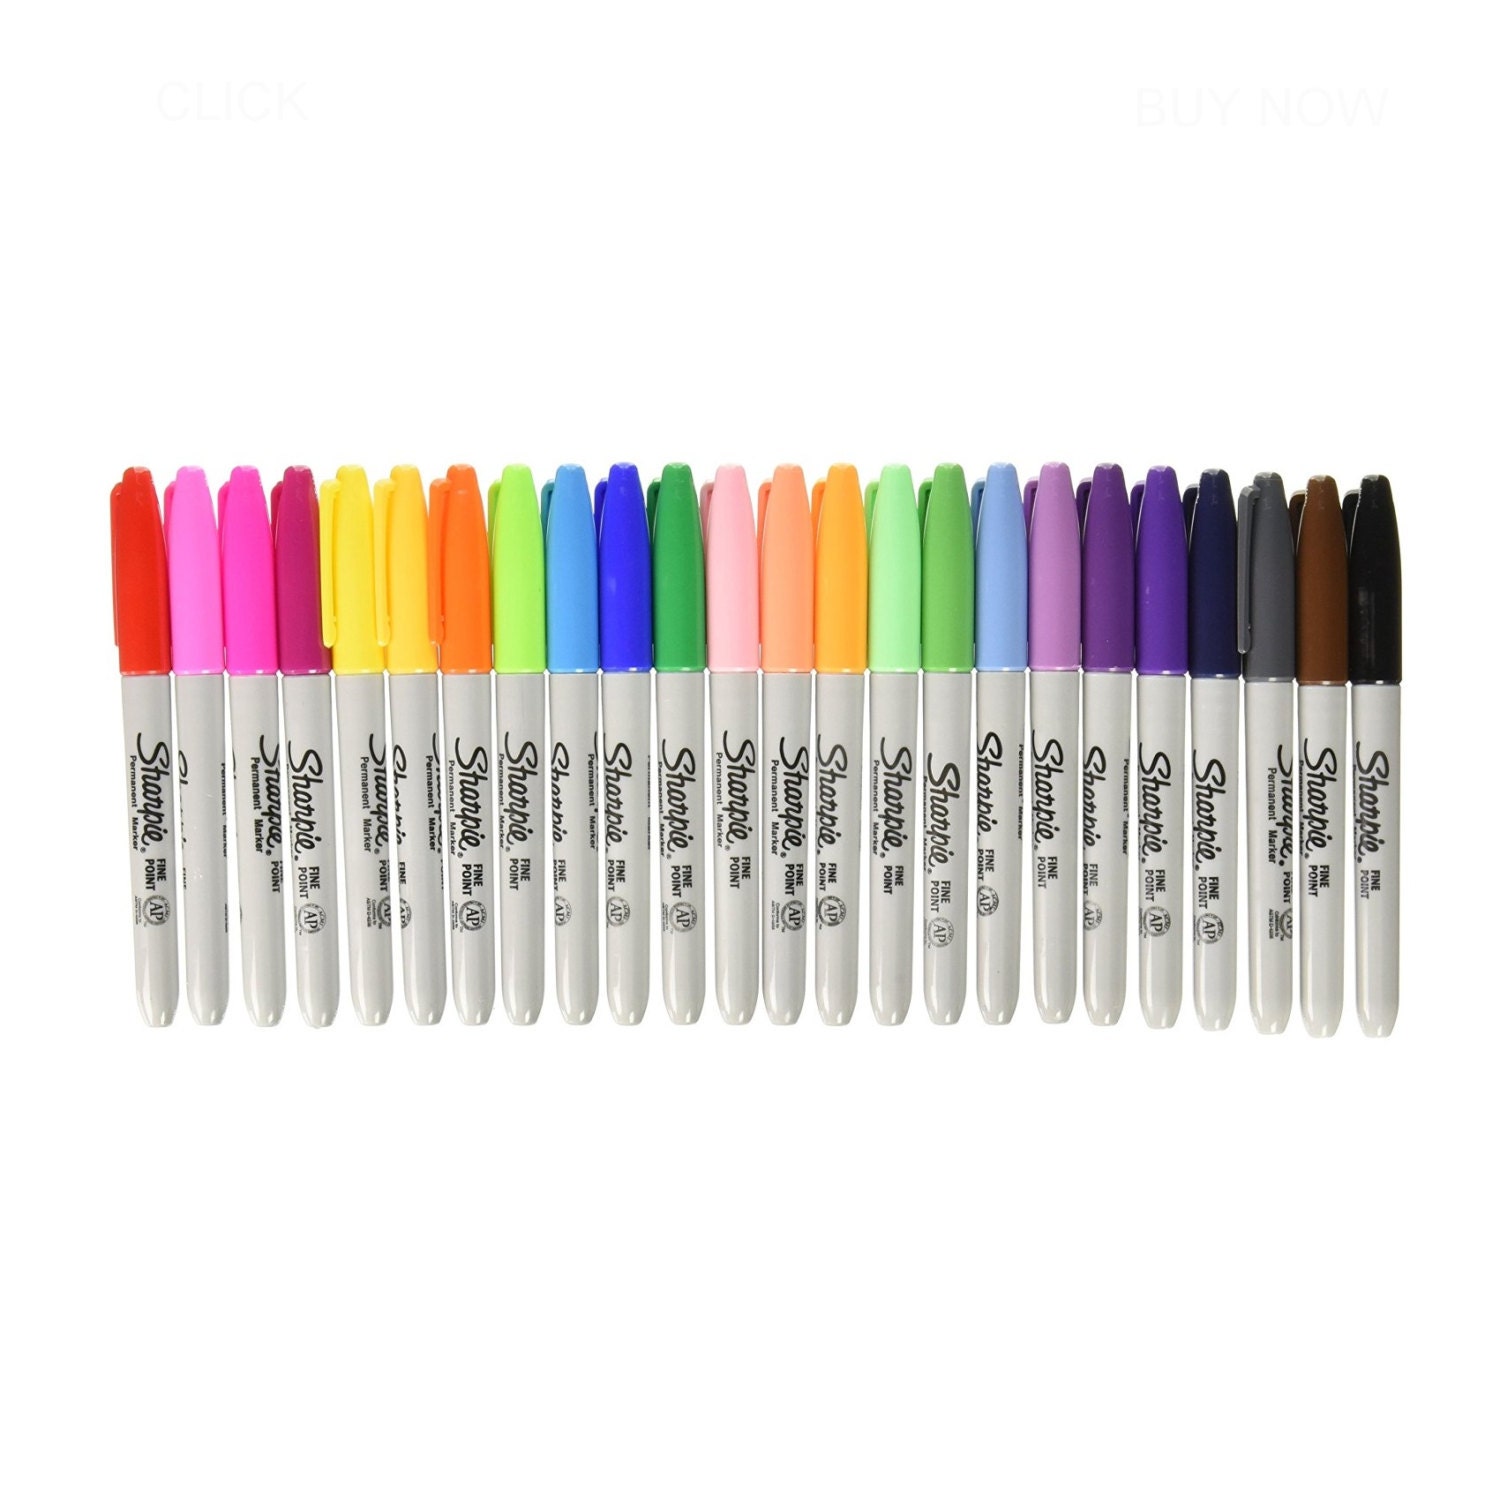 Sharpie Art Pens, Fine Point, Assorted Colors, 24 Count (1983967)